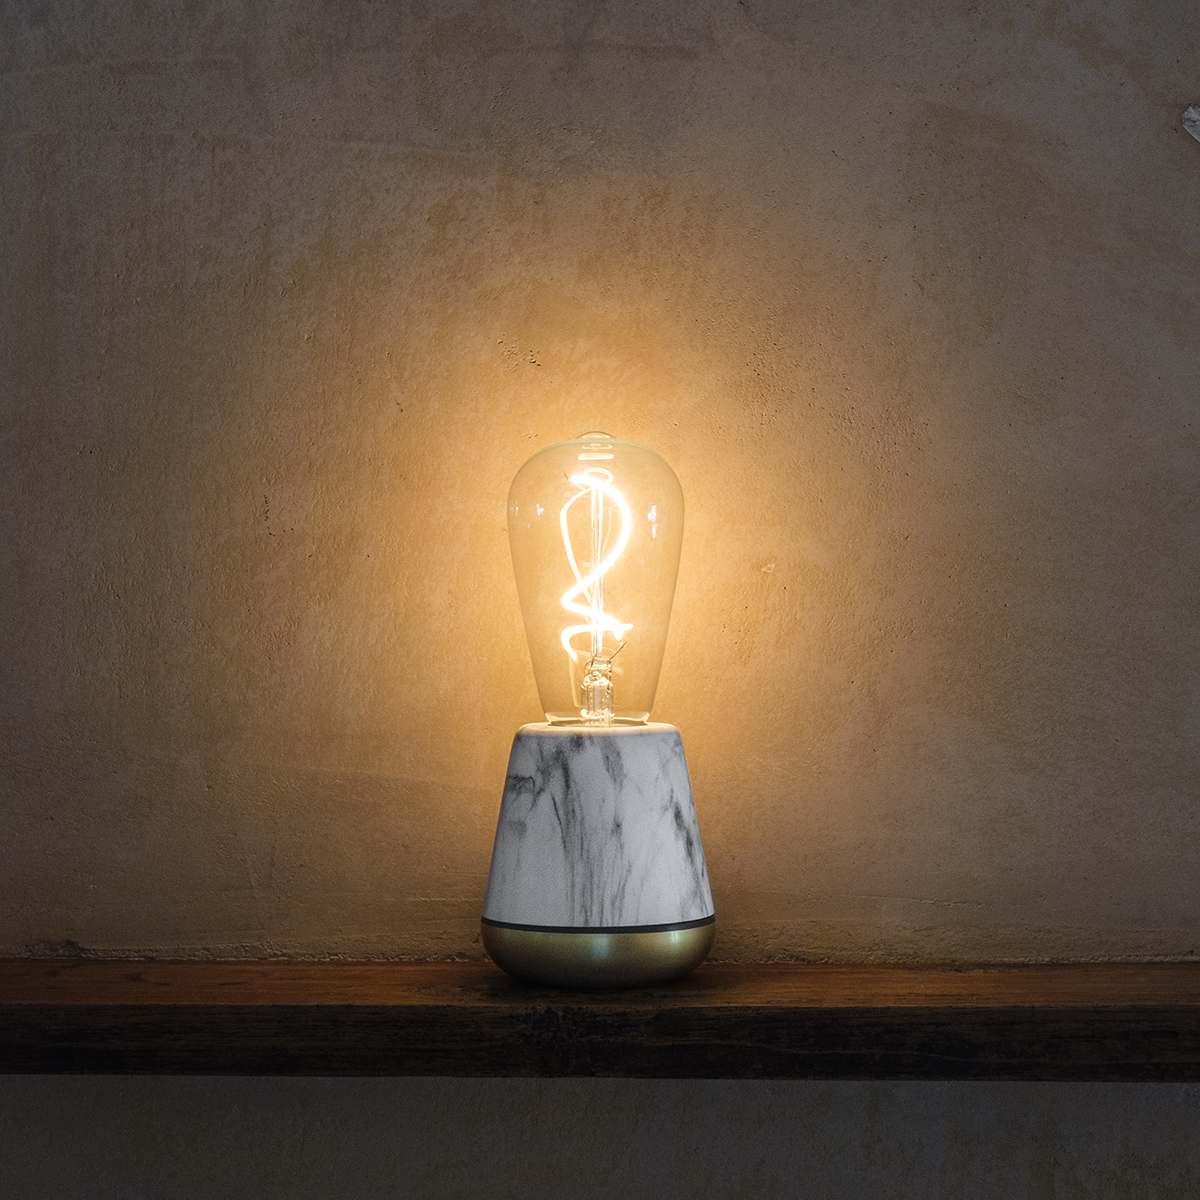 付属の専用LED電球は、オールドスクールな白熱電球を思わせる優しい灯り。